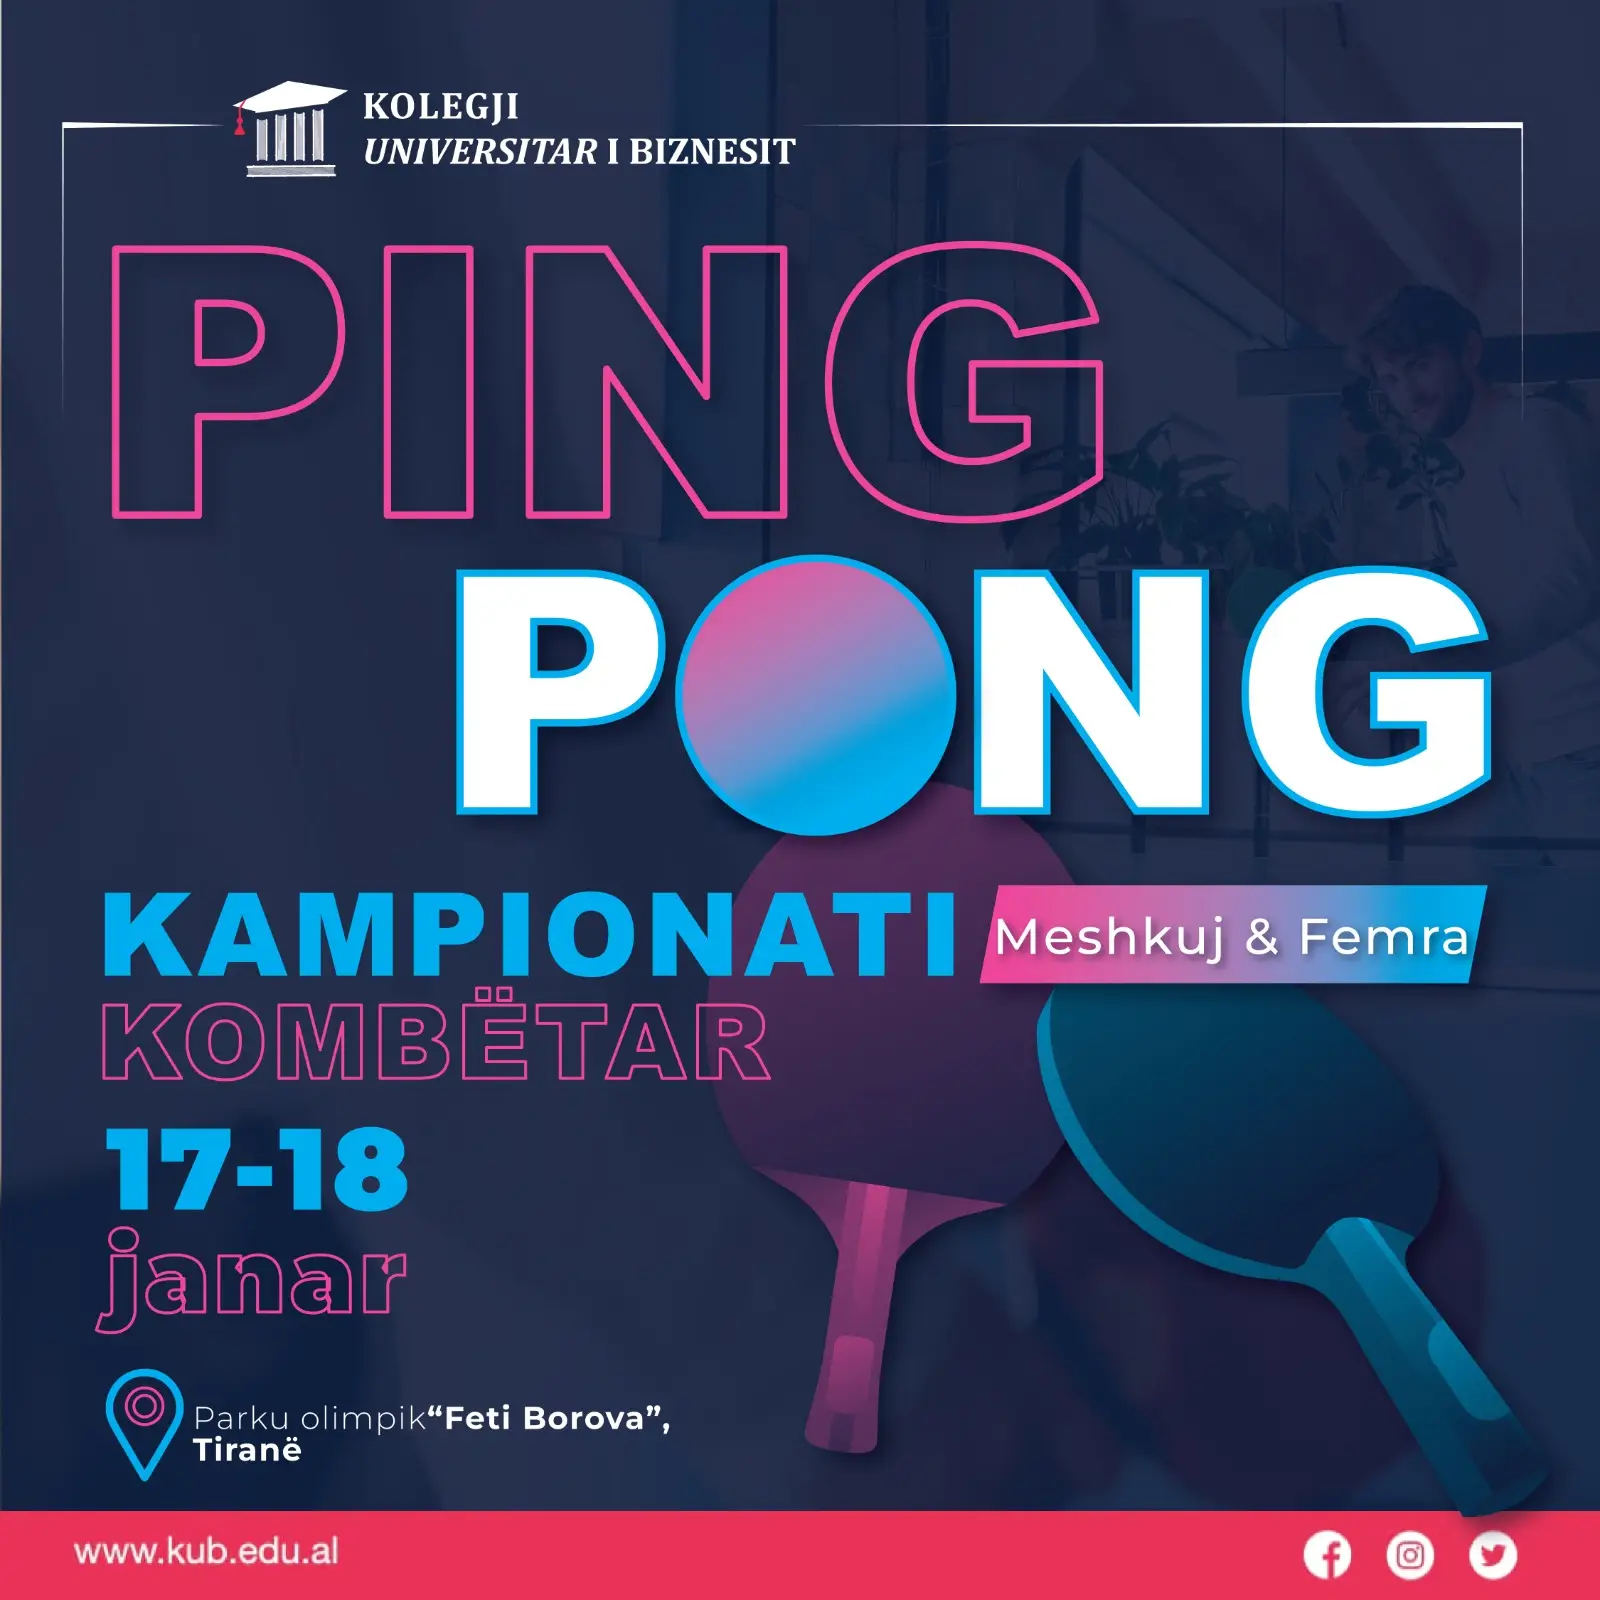 Kampionati Kombëtar i Ping Pongut për kategorinë femra dhe meshkuj